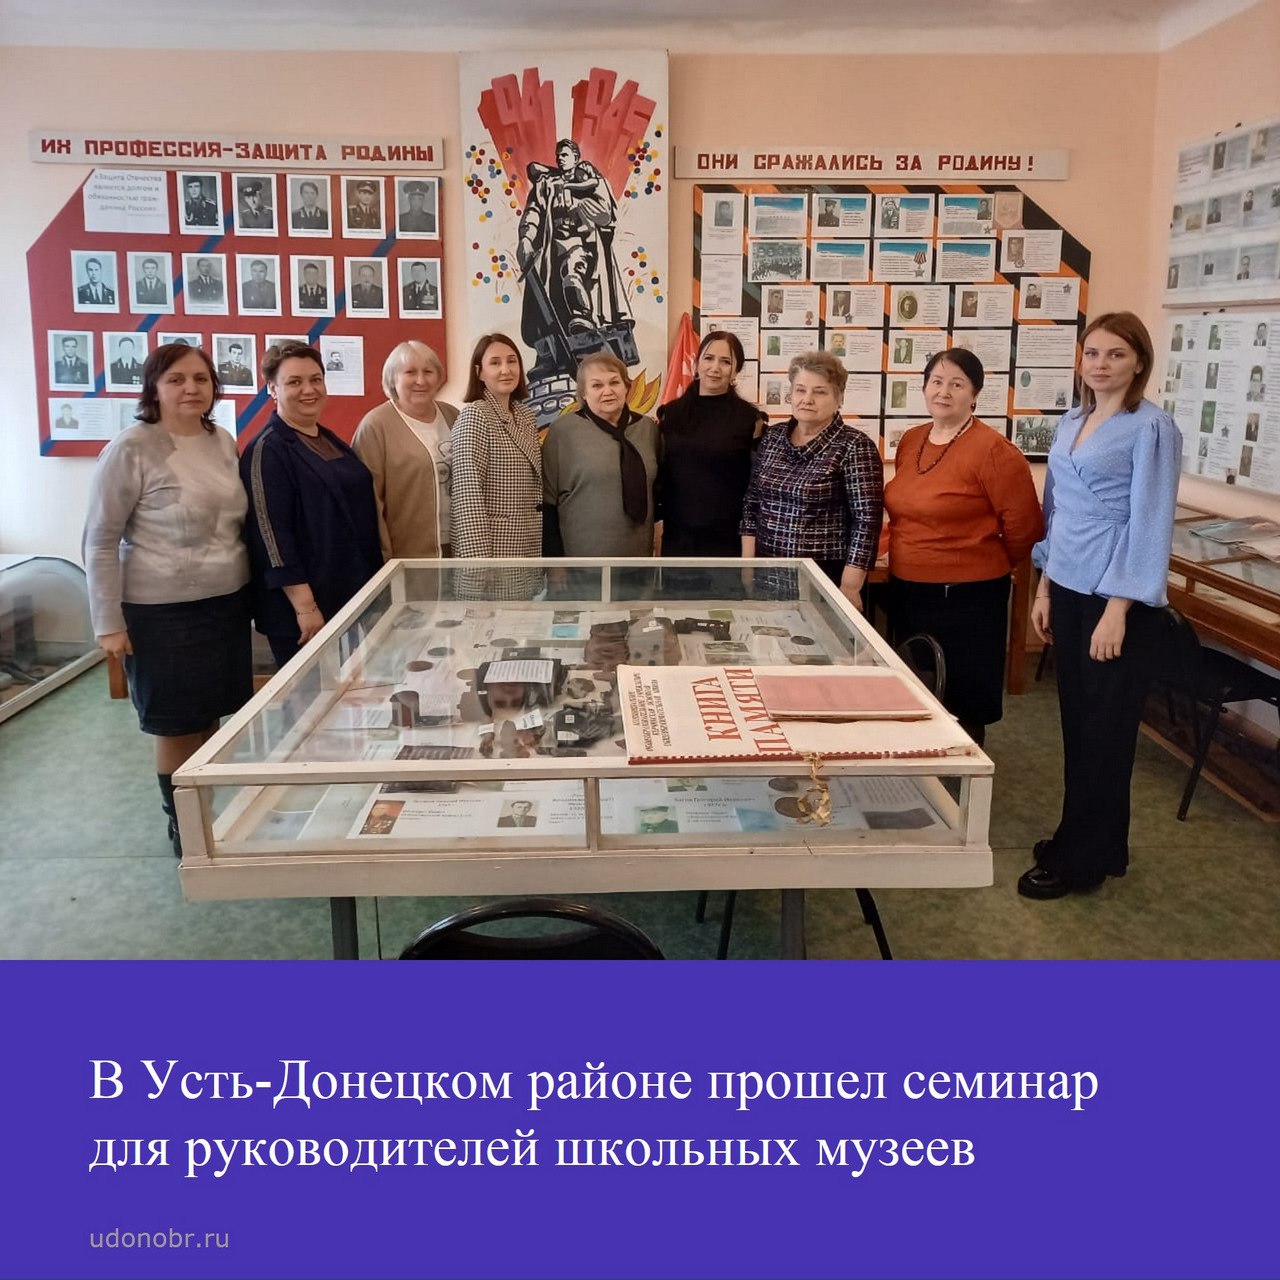 В Усть-Донецком районе прошел семинар для руководителей школьных музеев